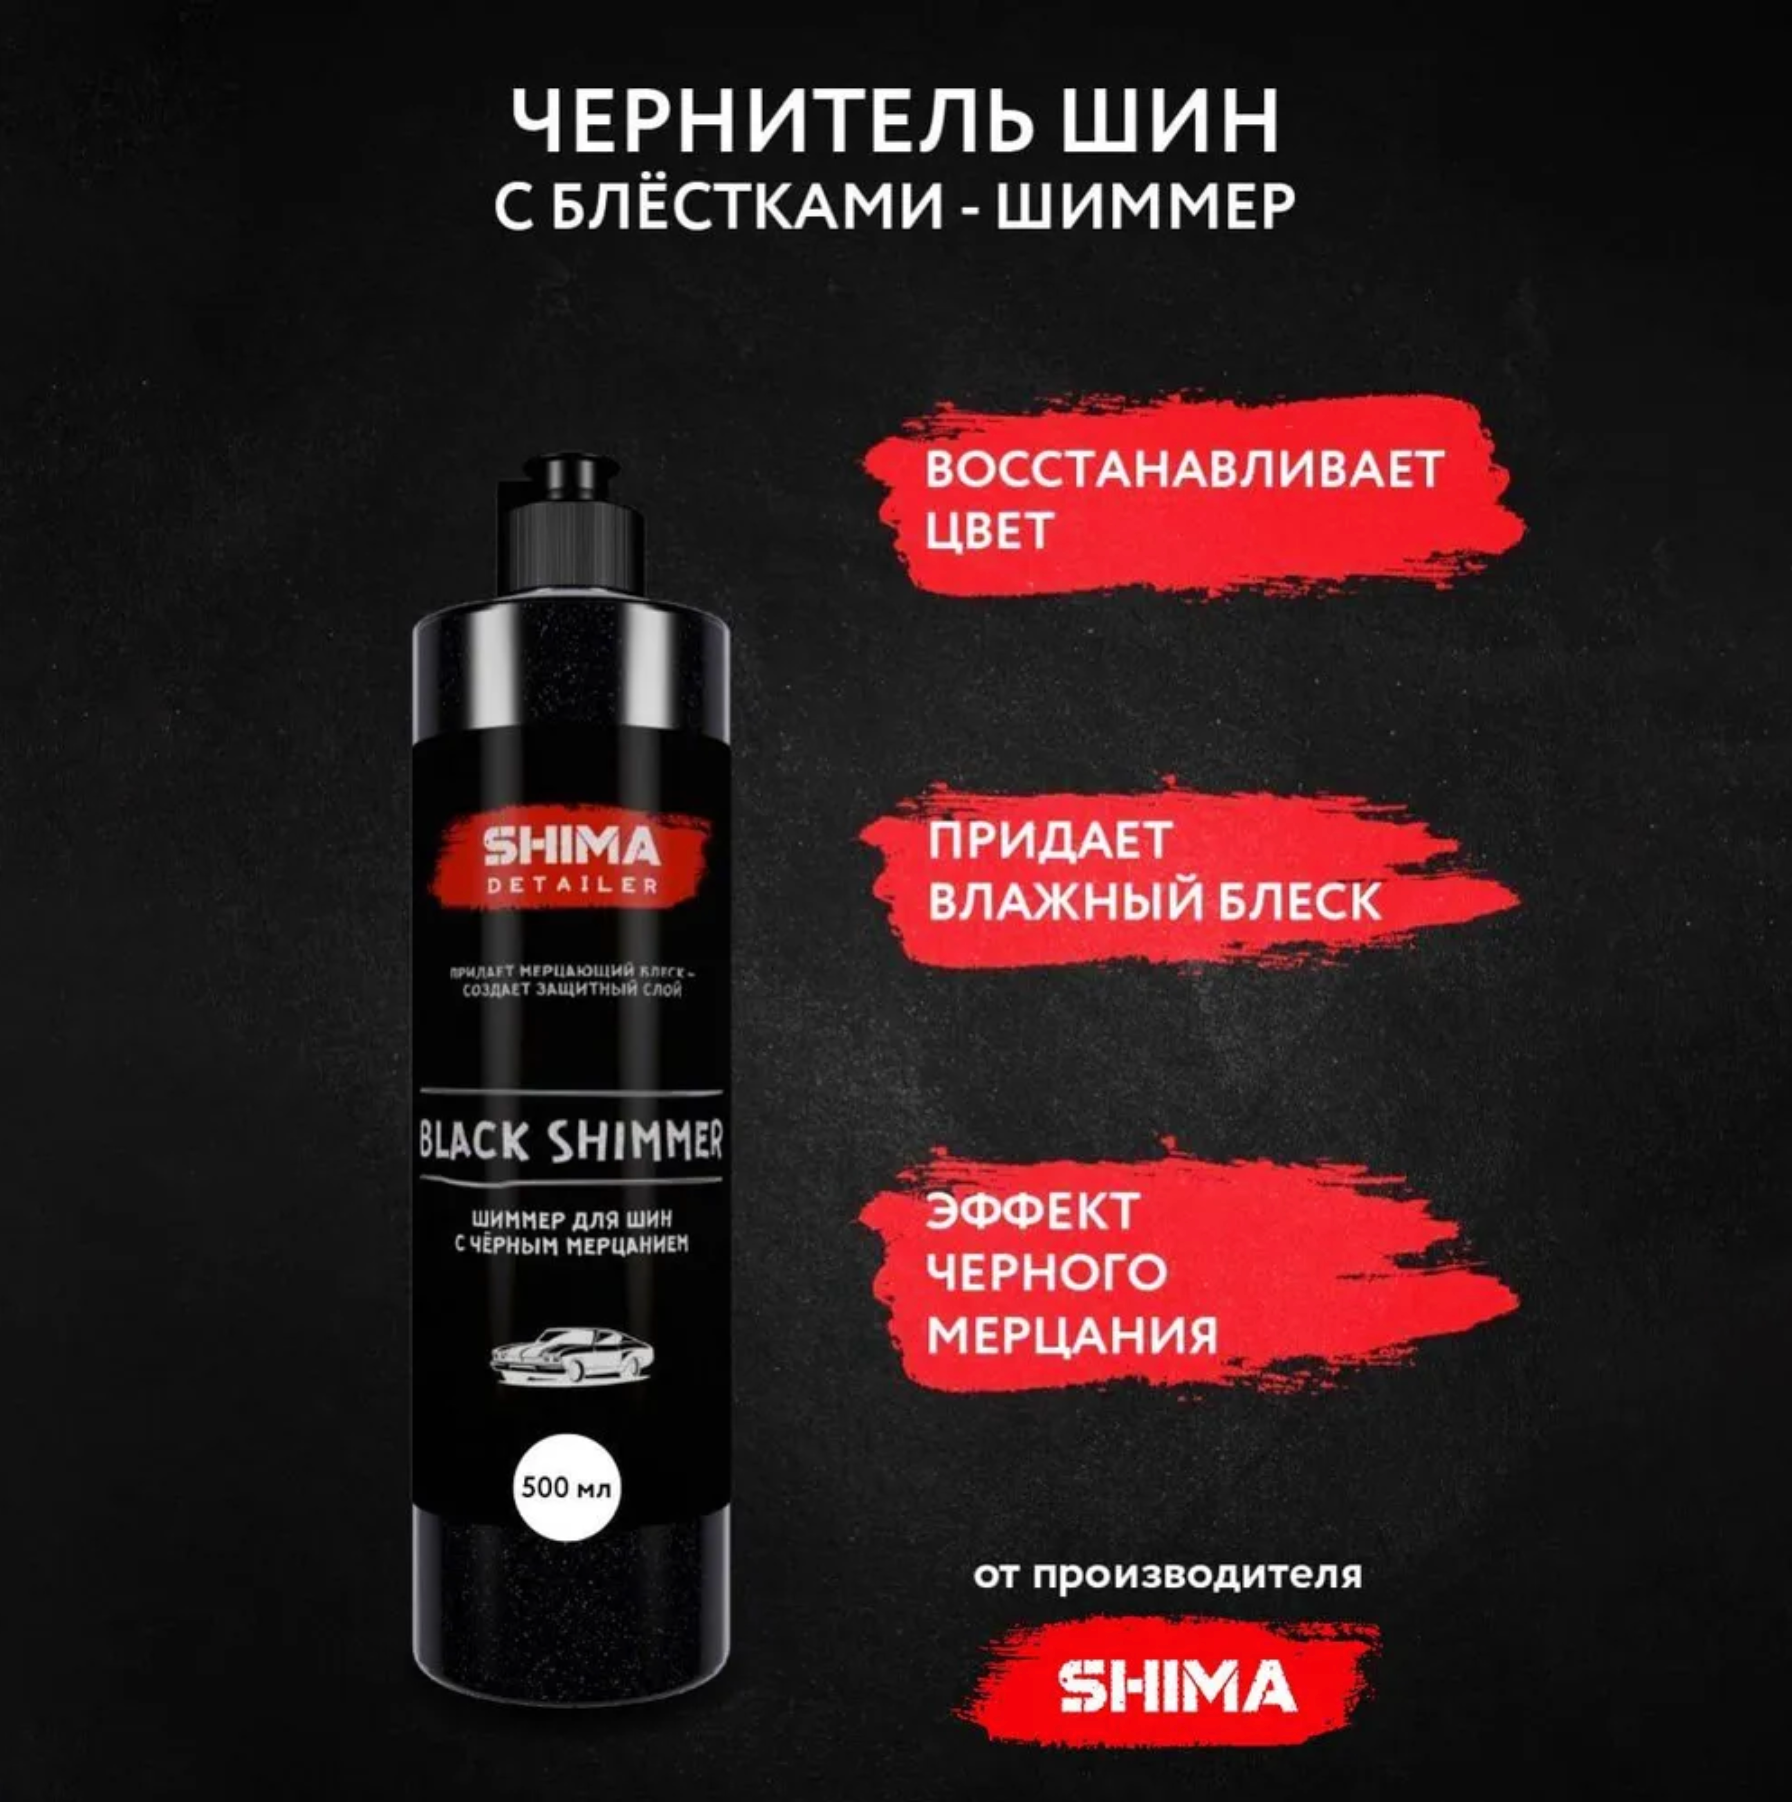 "Чернитель SHIMA Black Shimmer" - для шин и резины, с черным мерцанием, 500мл